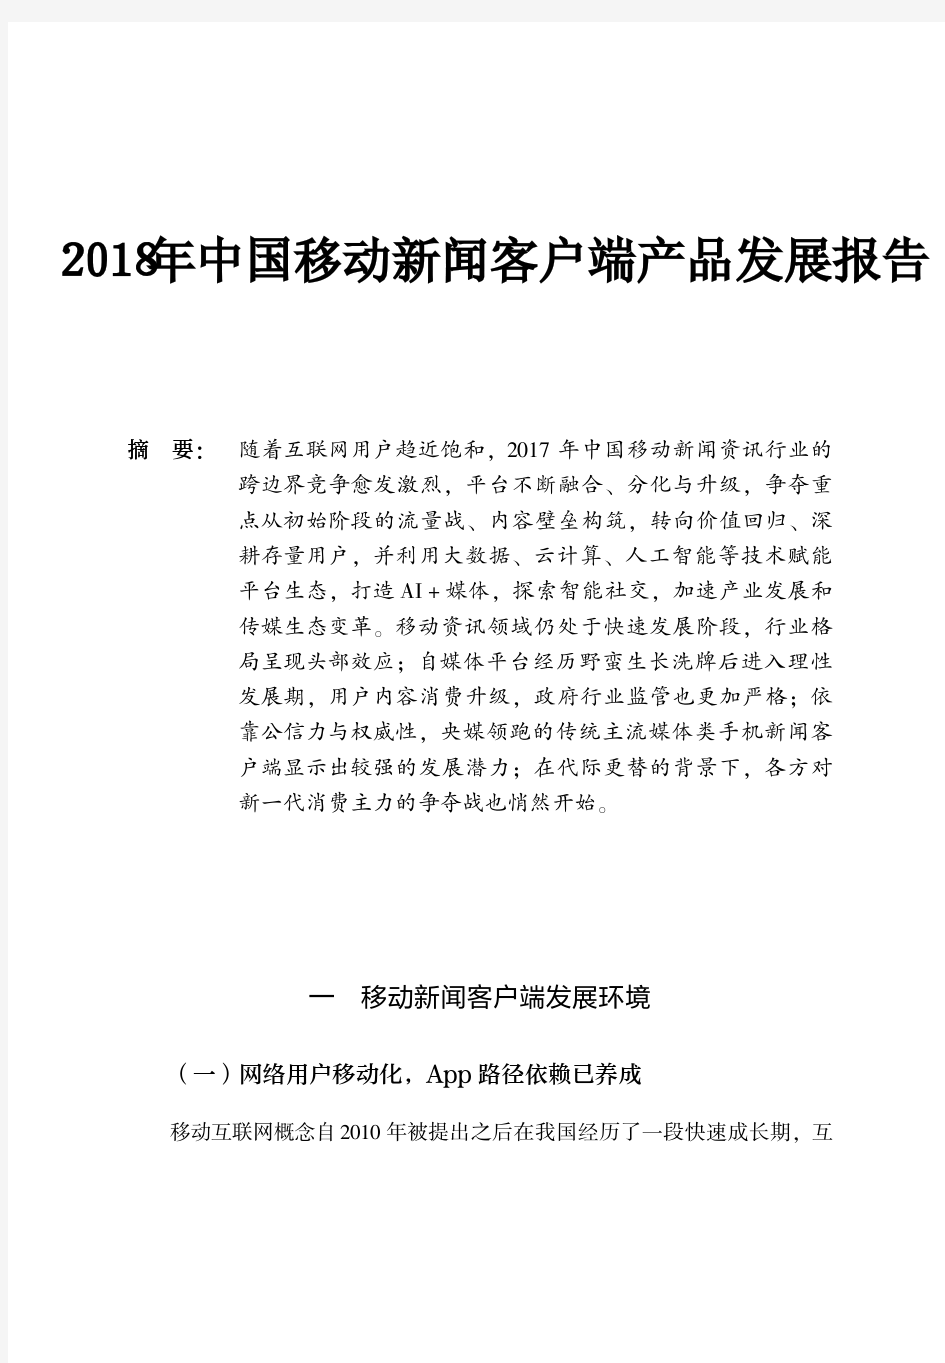 2018年中国移动新闻客户端产品发展报告